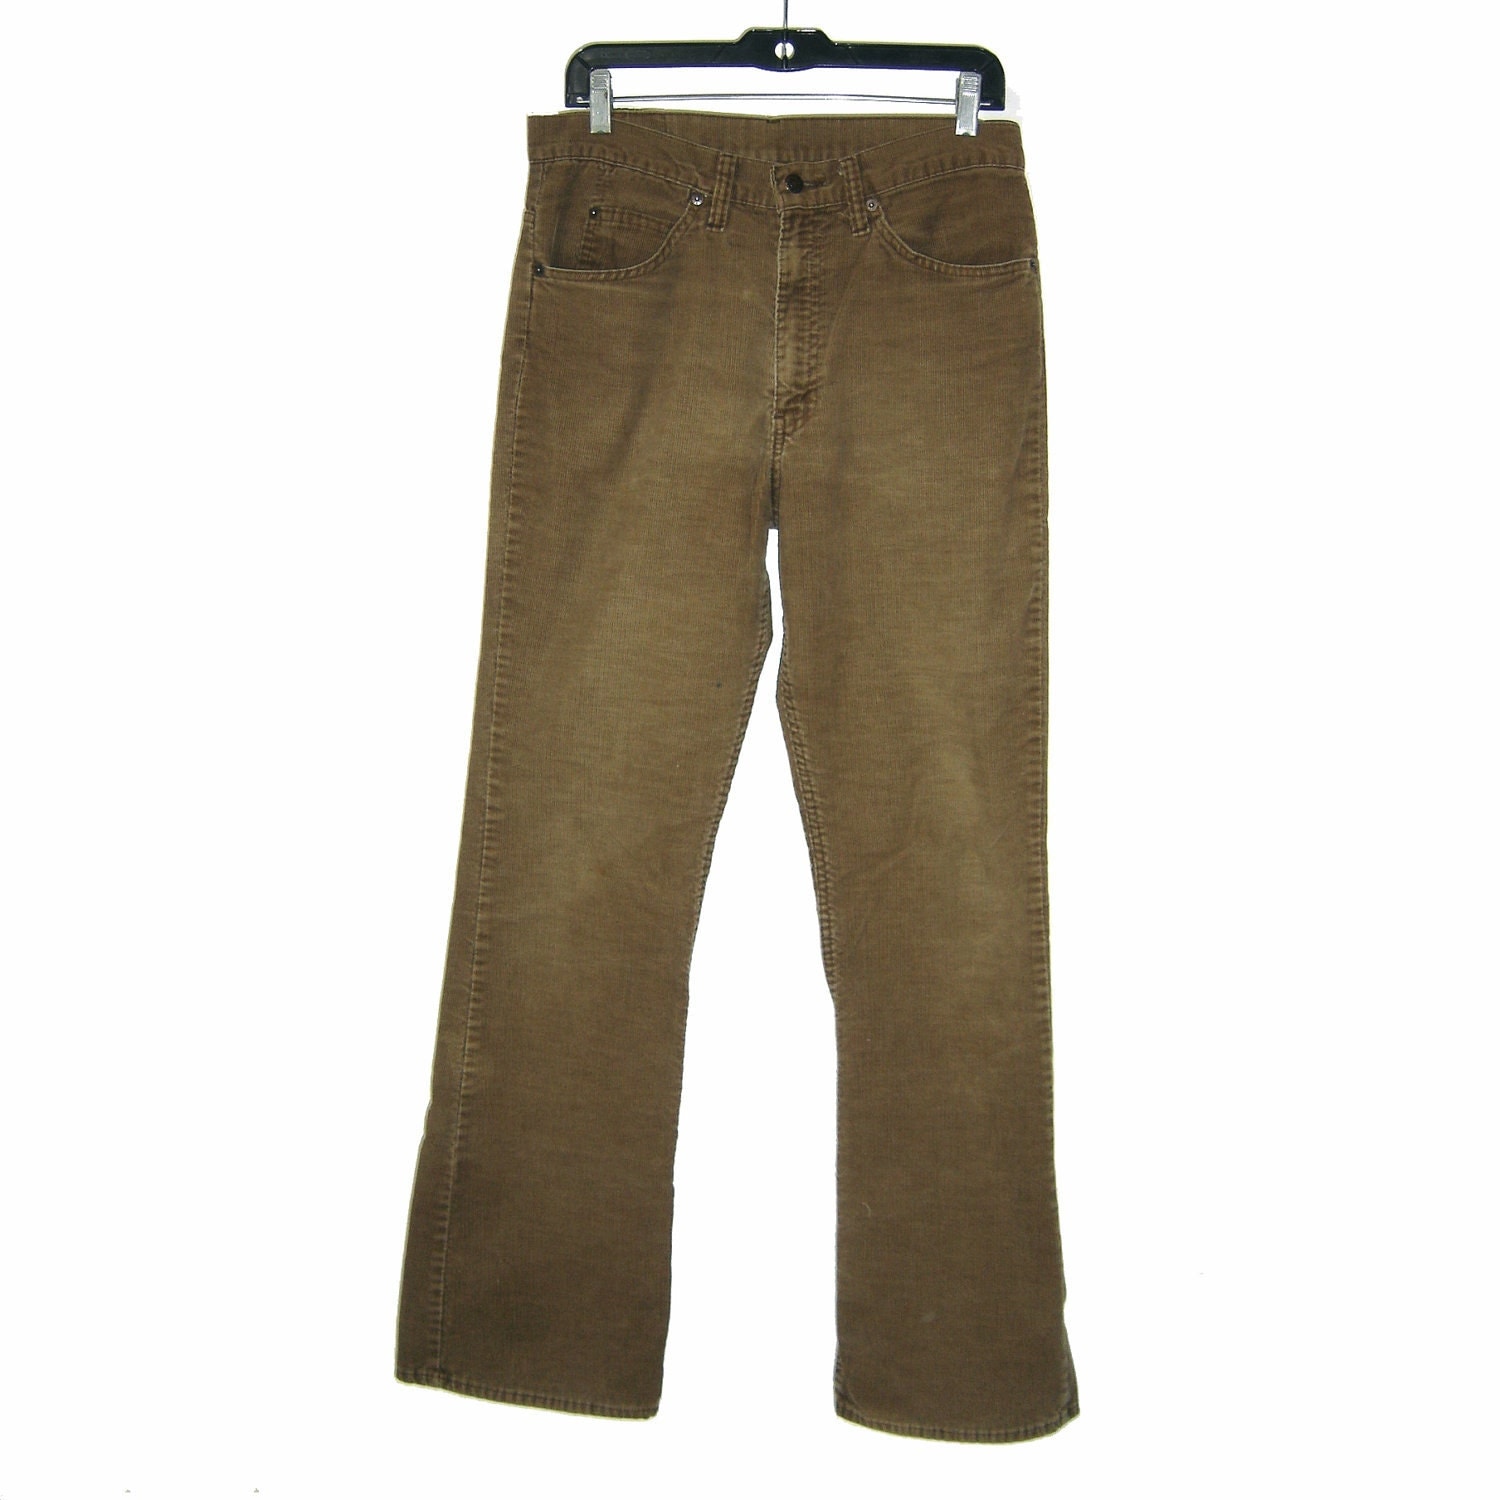 Vintage 1982 LEVI'S LEVIS 517 Bootcut Brown Corduroy Jeans